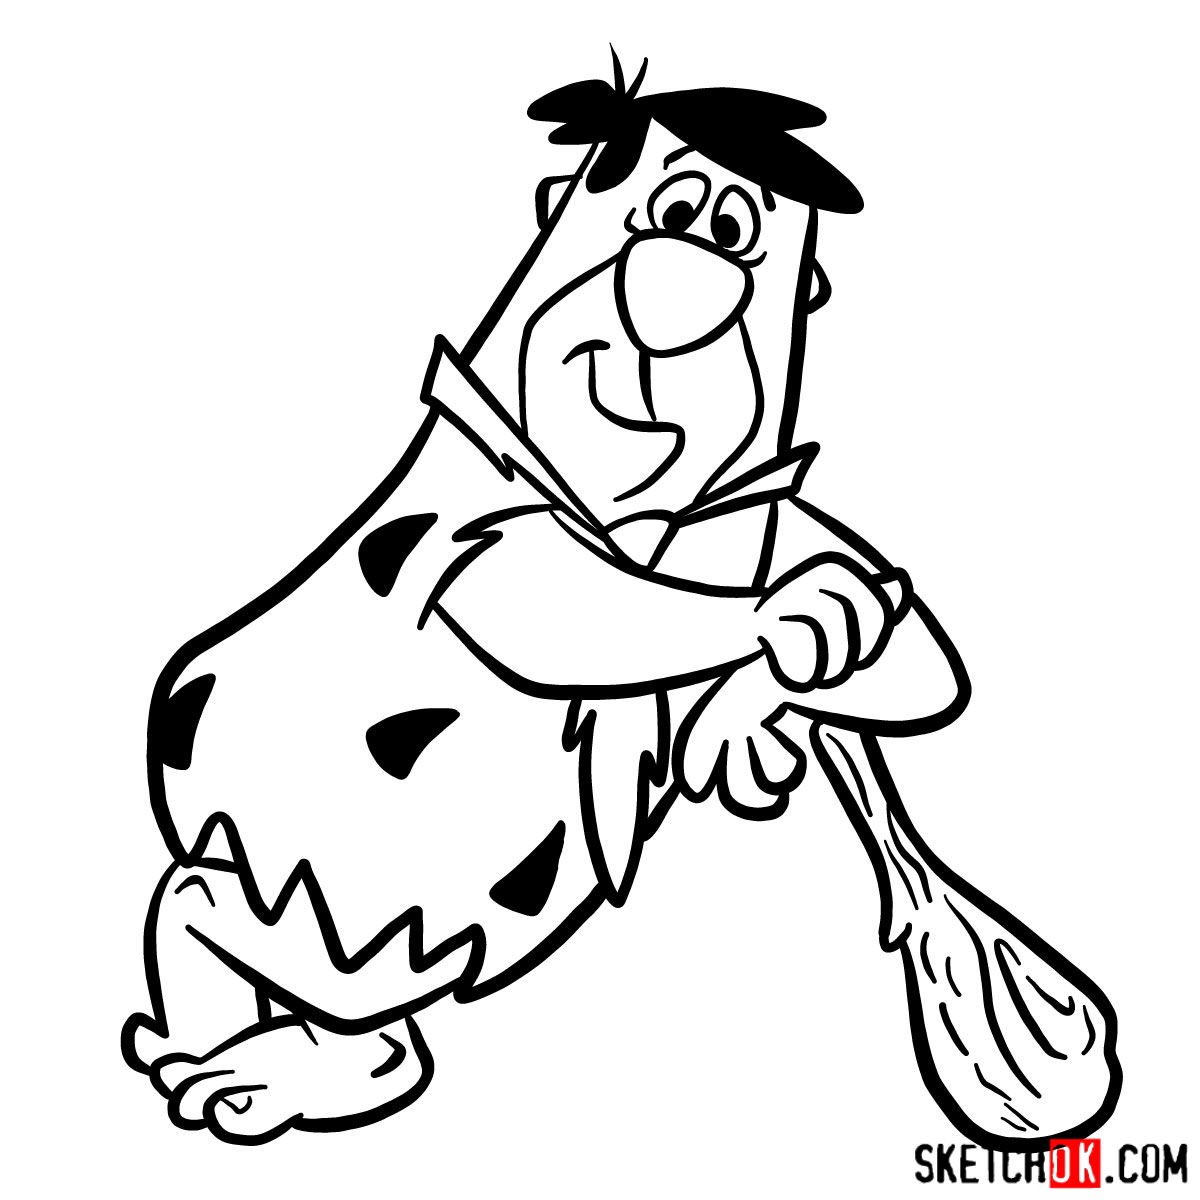 How to draw Fred Flintstone - step 13